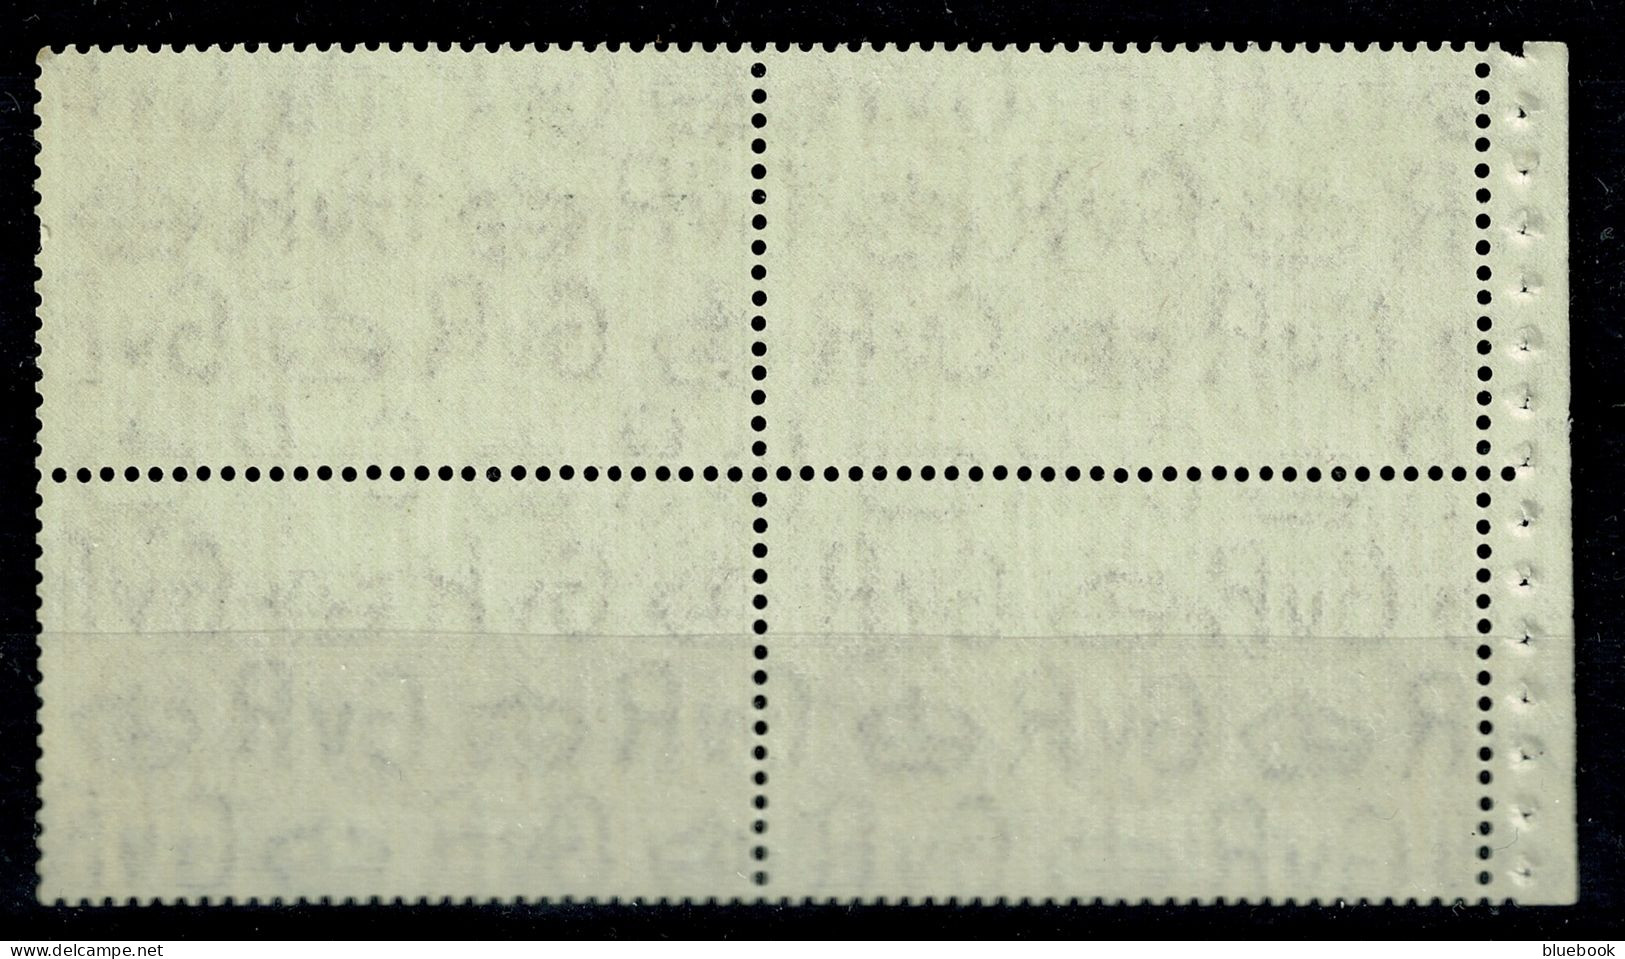 Ref 1644 - GB 1935 KGV Silver Jubilee - 1 1/2d Booklet Pane MNH SG 455a - Ongebruikt